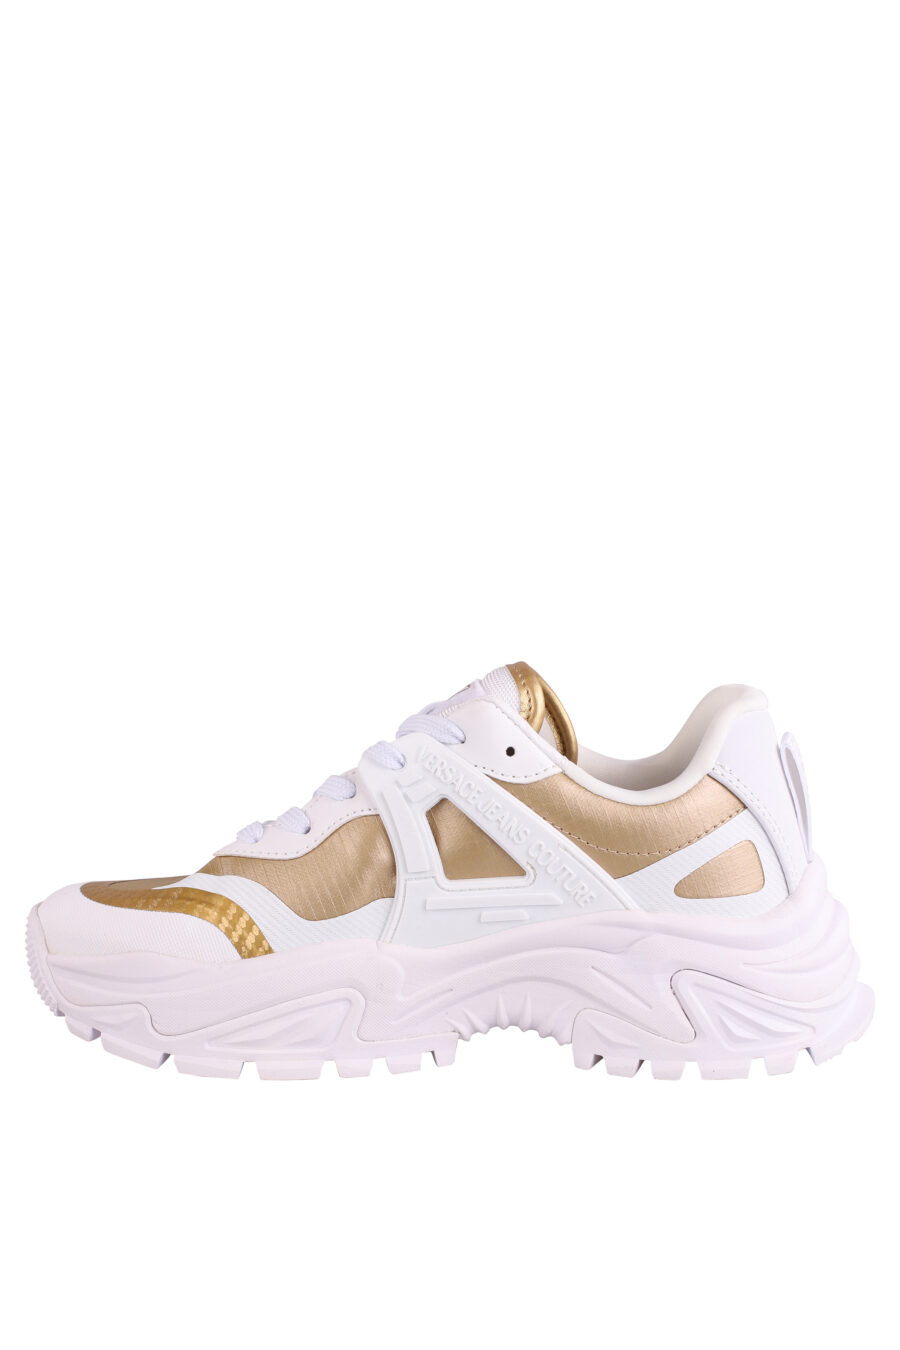 Zapatillas blancas con dorado y logo - IMG 9023